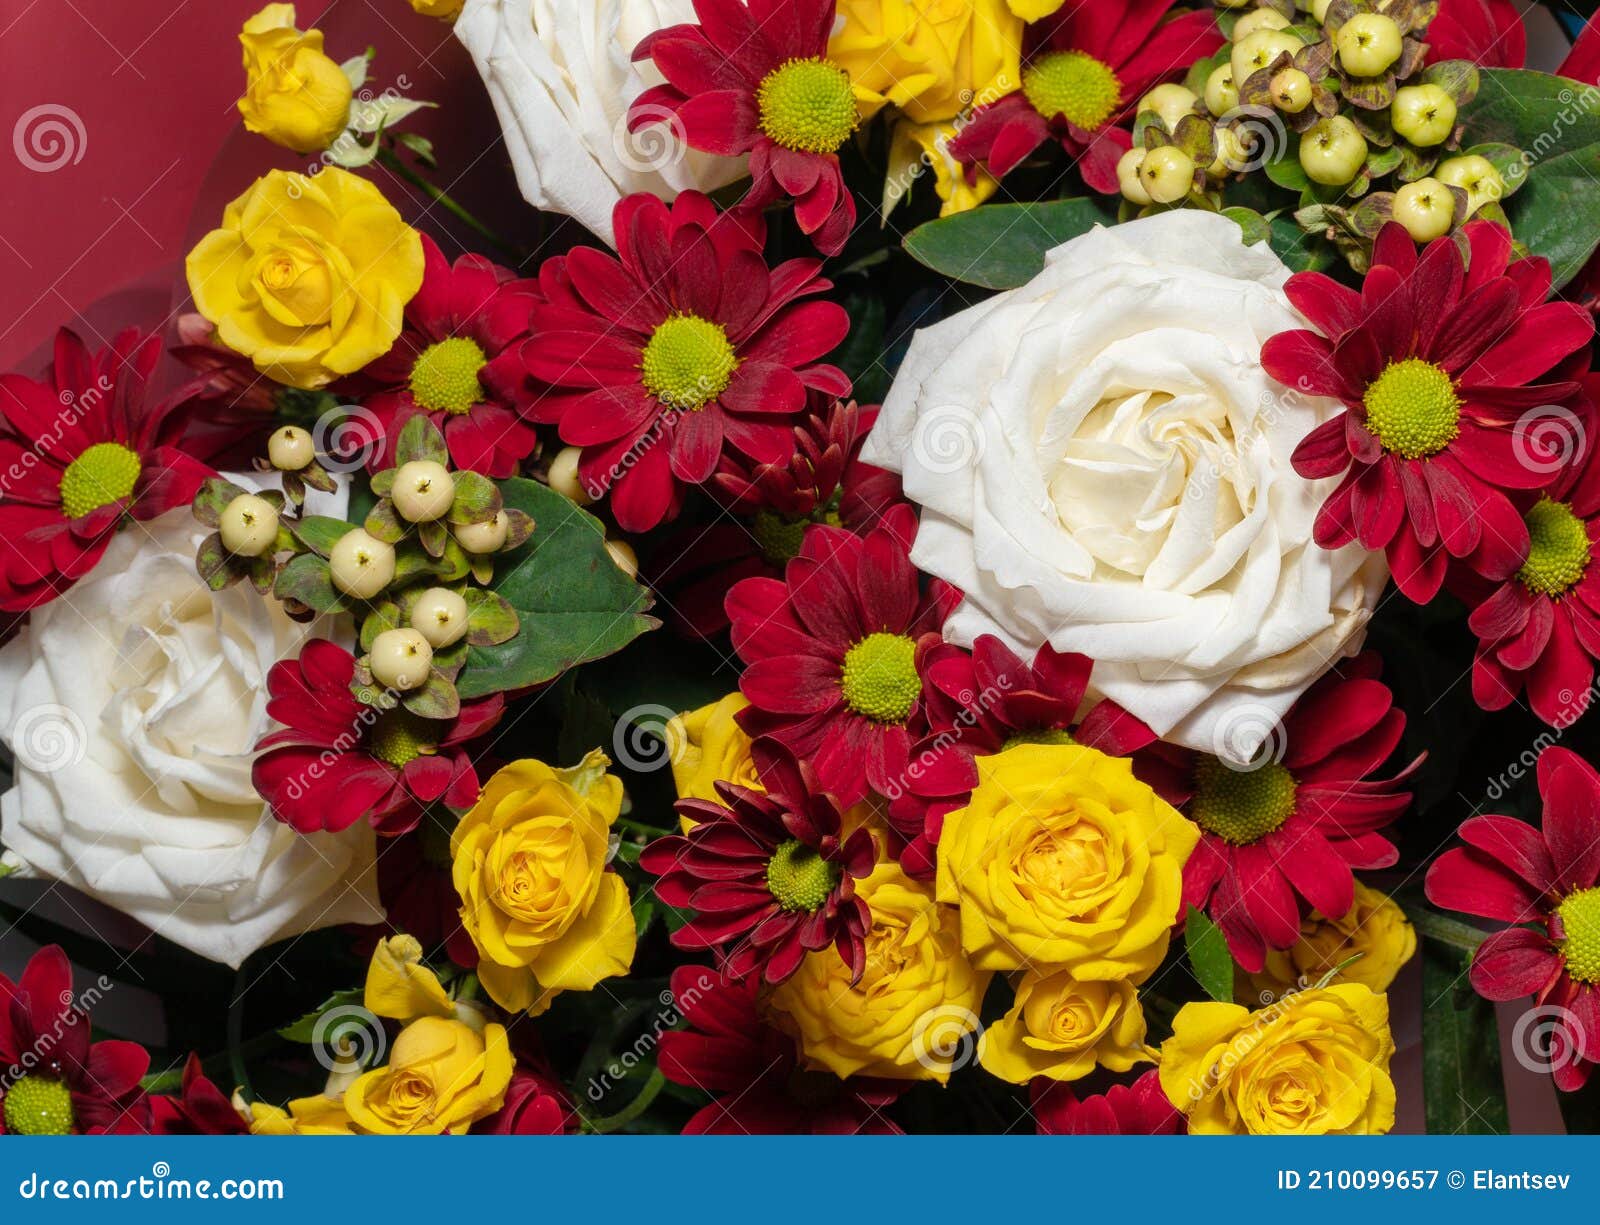 Un Beau Bouquet De Fleurs Variées, Y Compris Des Roses. Fond Fleuri. Carte  Postale De Vacances Image stock - Image du botanique, emballage: 210099657